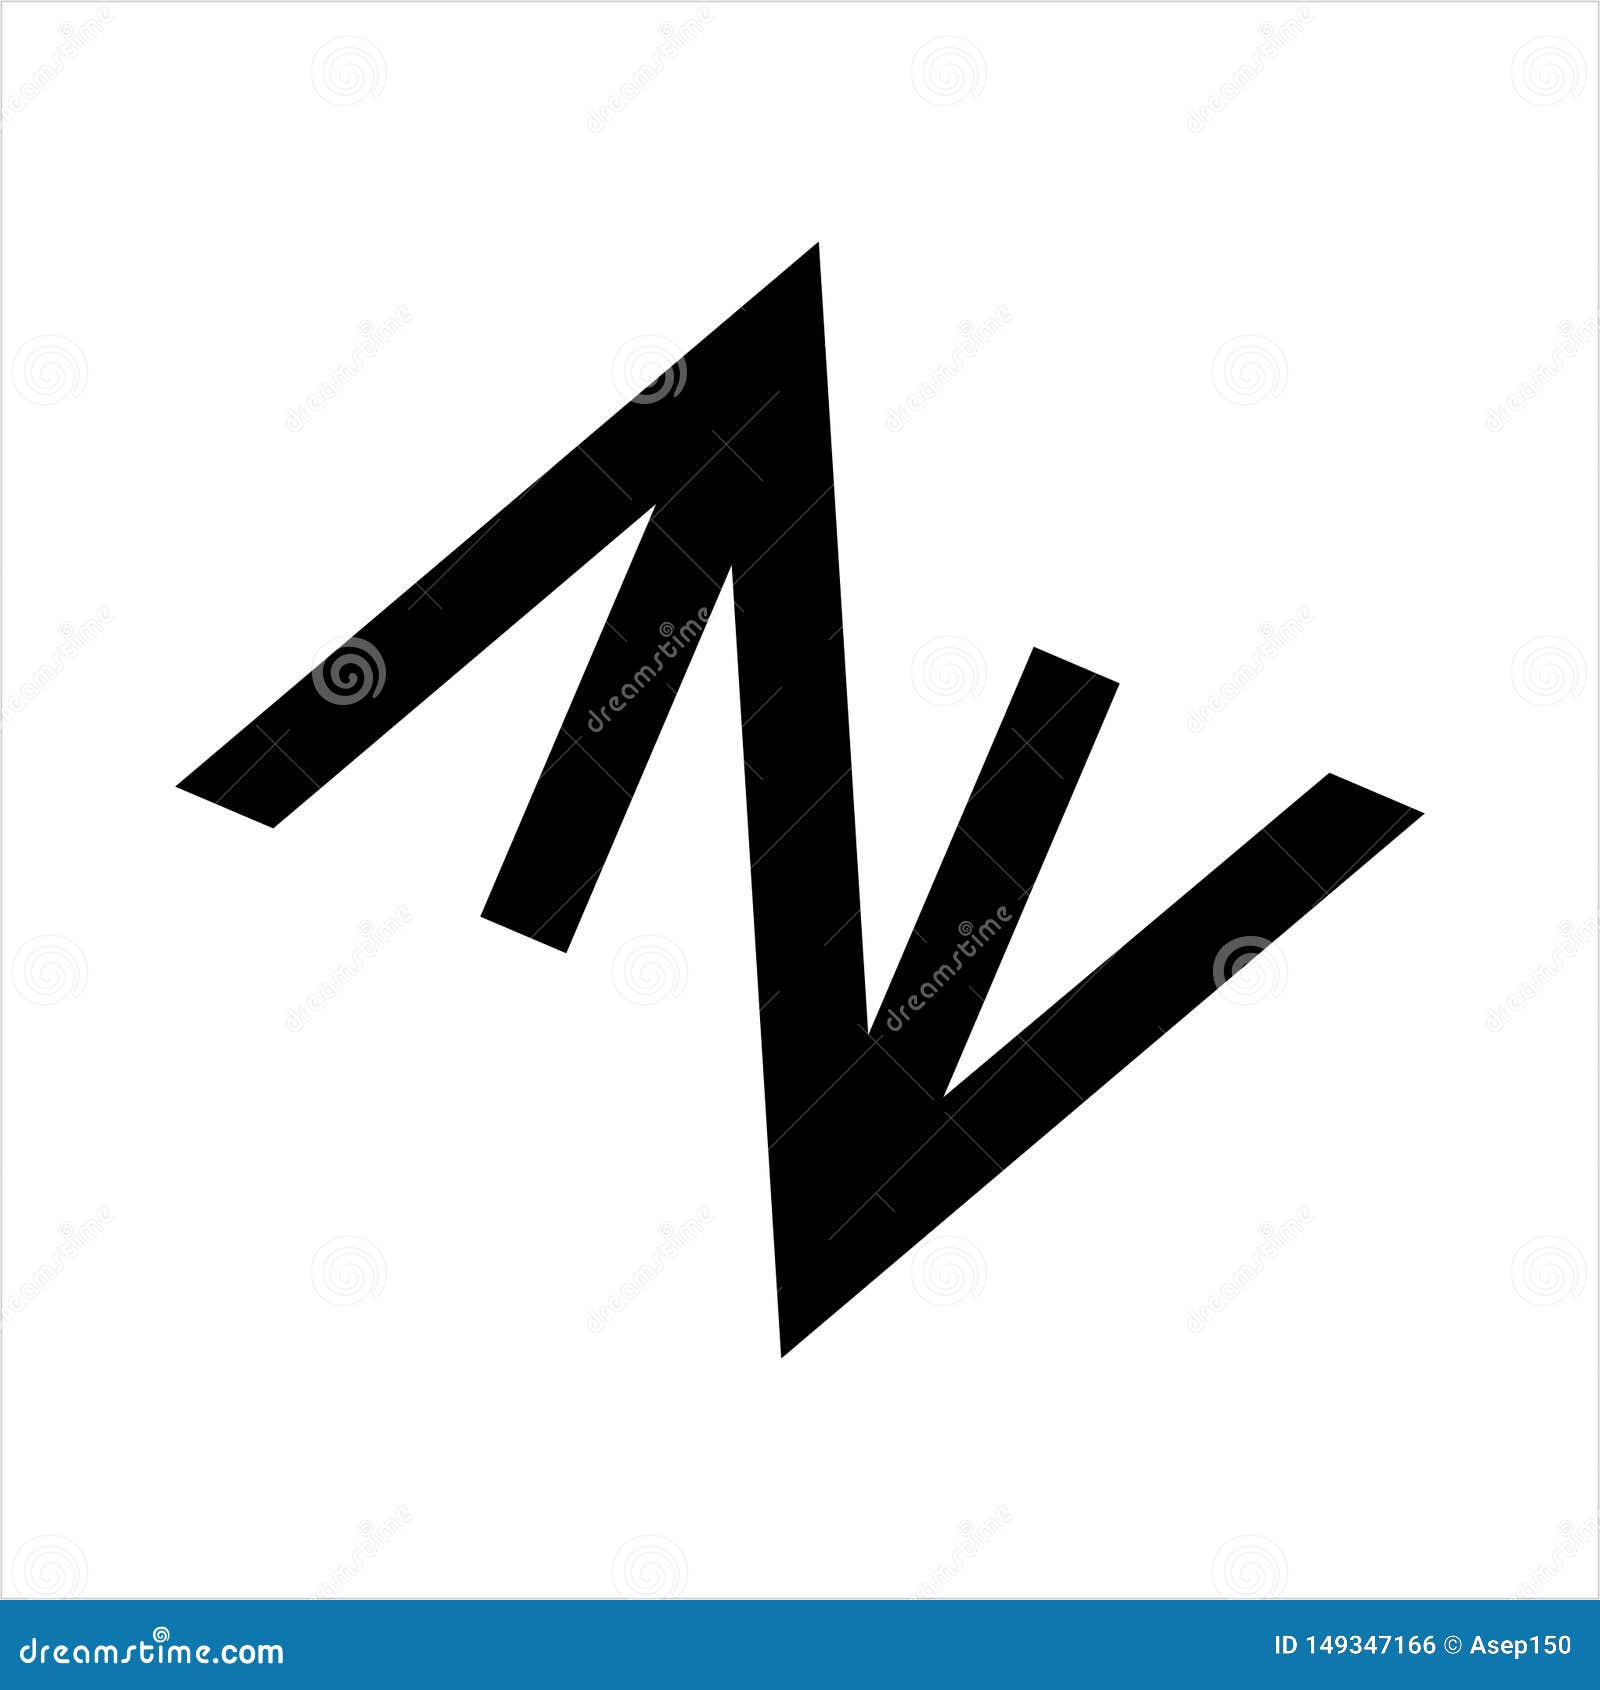 aa, av, aza. azv, ana, anv initials geometric letter company logo 3d, abstract, alphabet, ana, anv, av, aza, azv, black, brand,